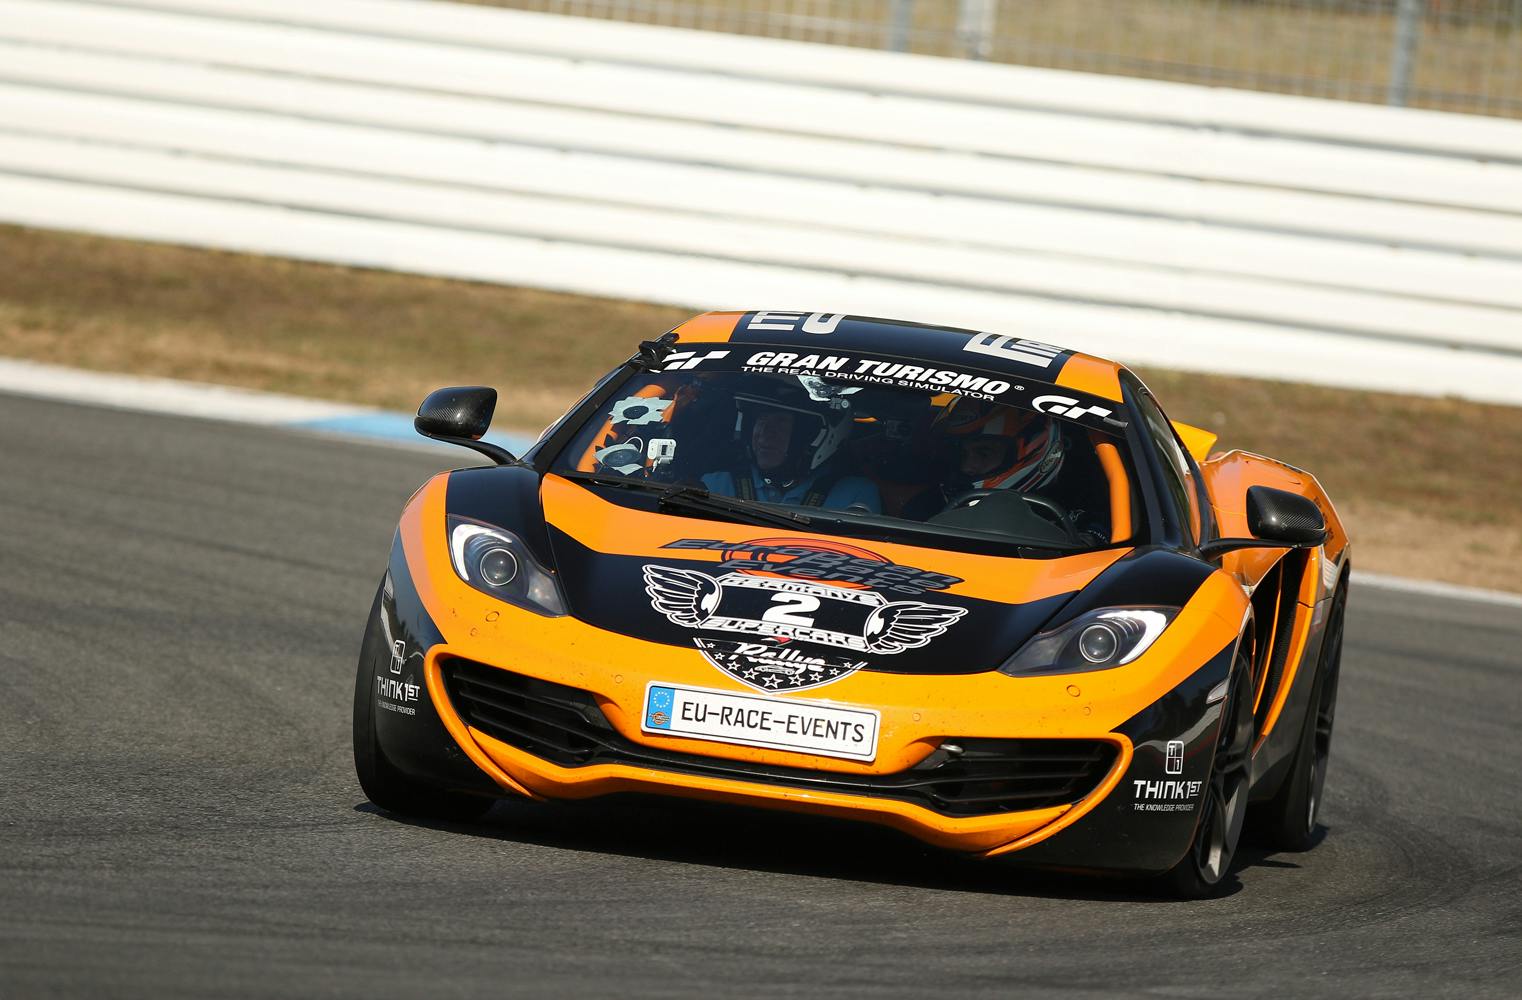 McLaren MP4-12C Clubsport Rennstrecke fahren | 3 Runden